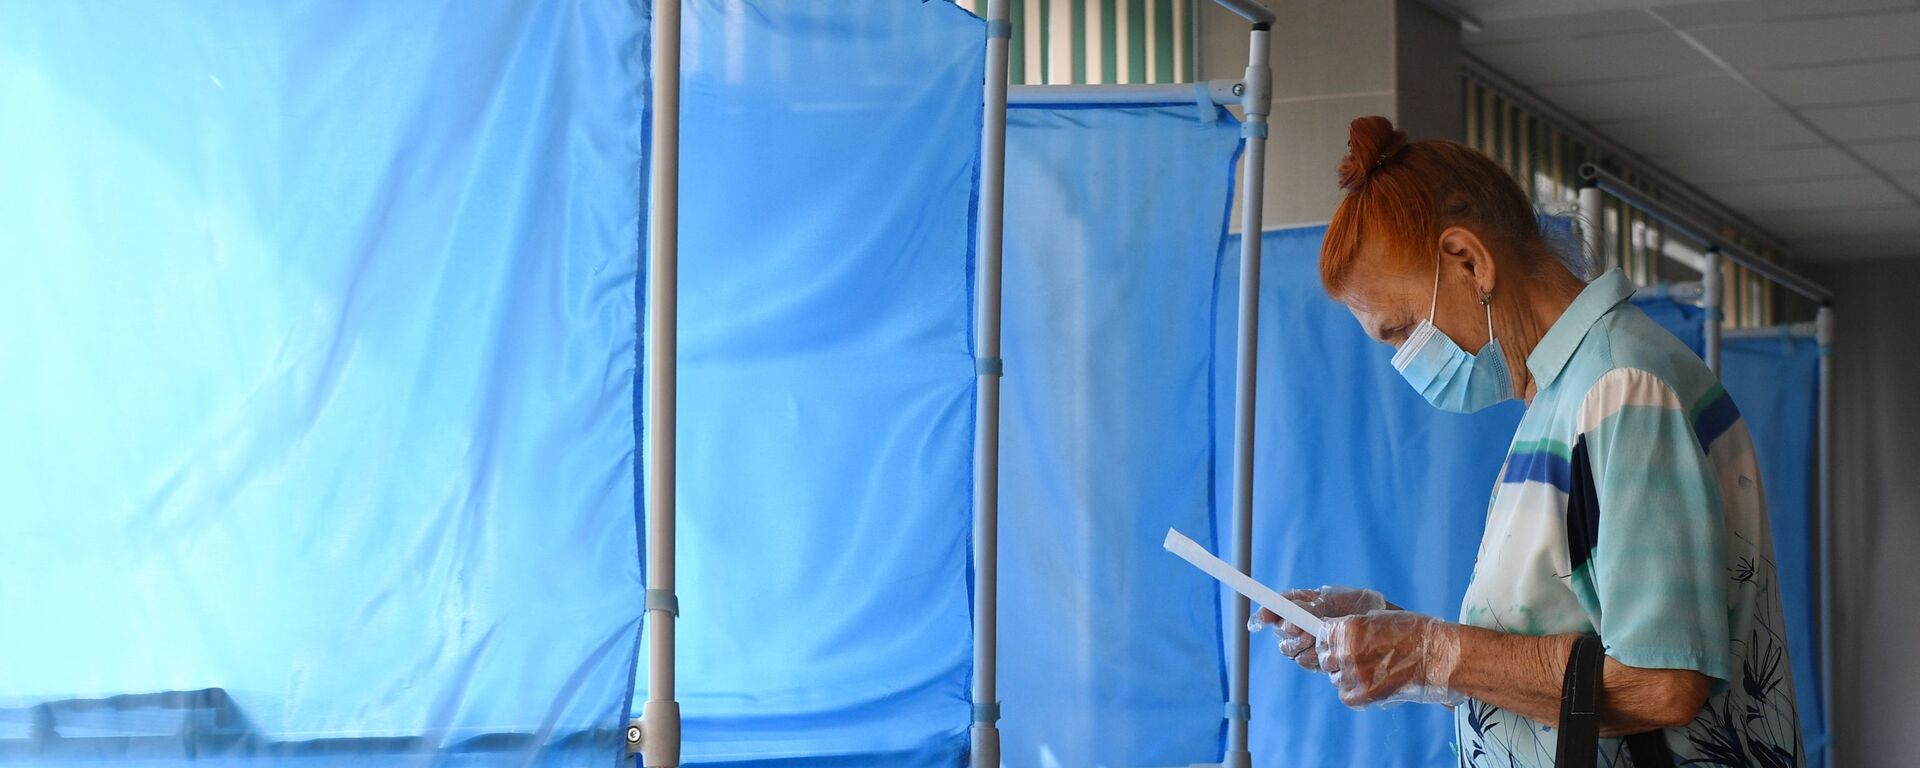 Женщина принимает участие в голосовании по внесению поправок в Конституцию РФ на избирательном участке №1503 в Новосибирске - Sputnik Грузия, 1920, 20.09.2021